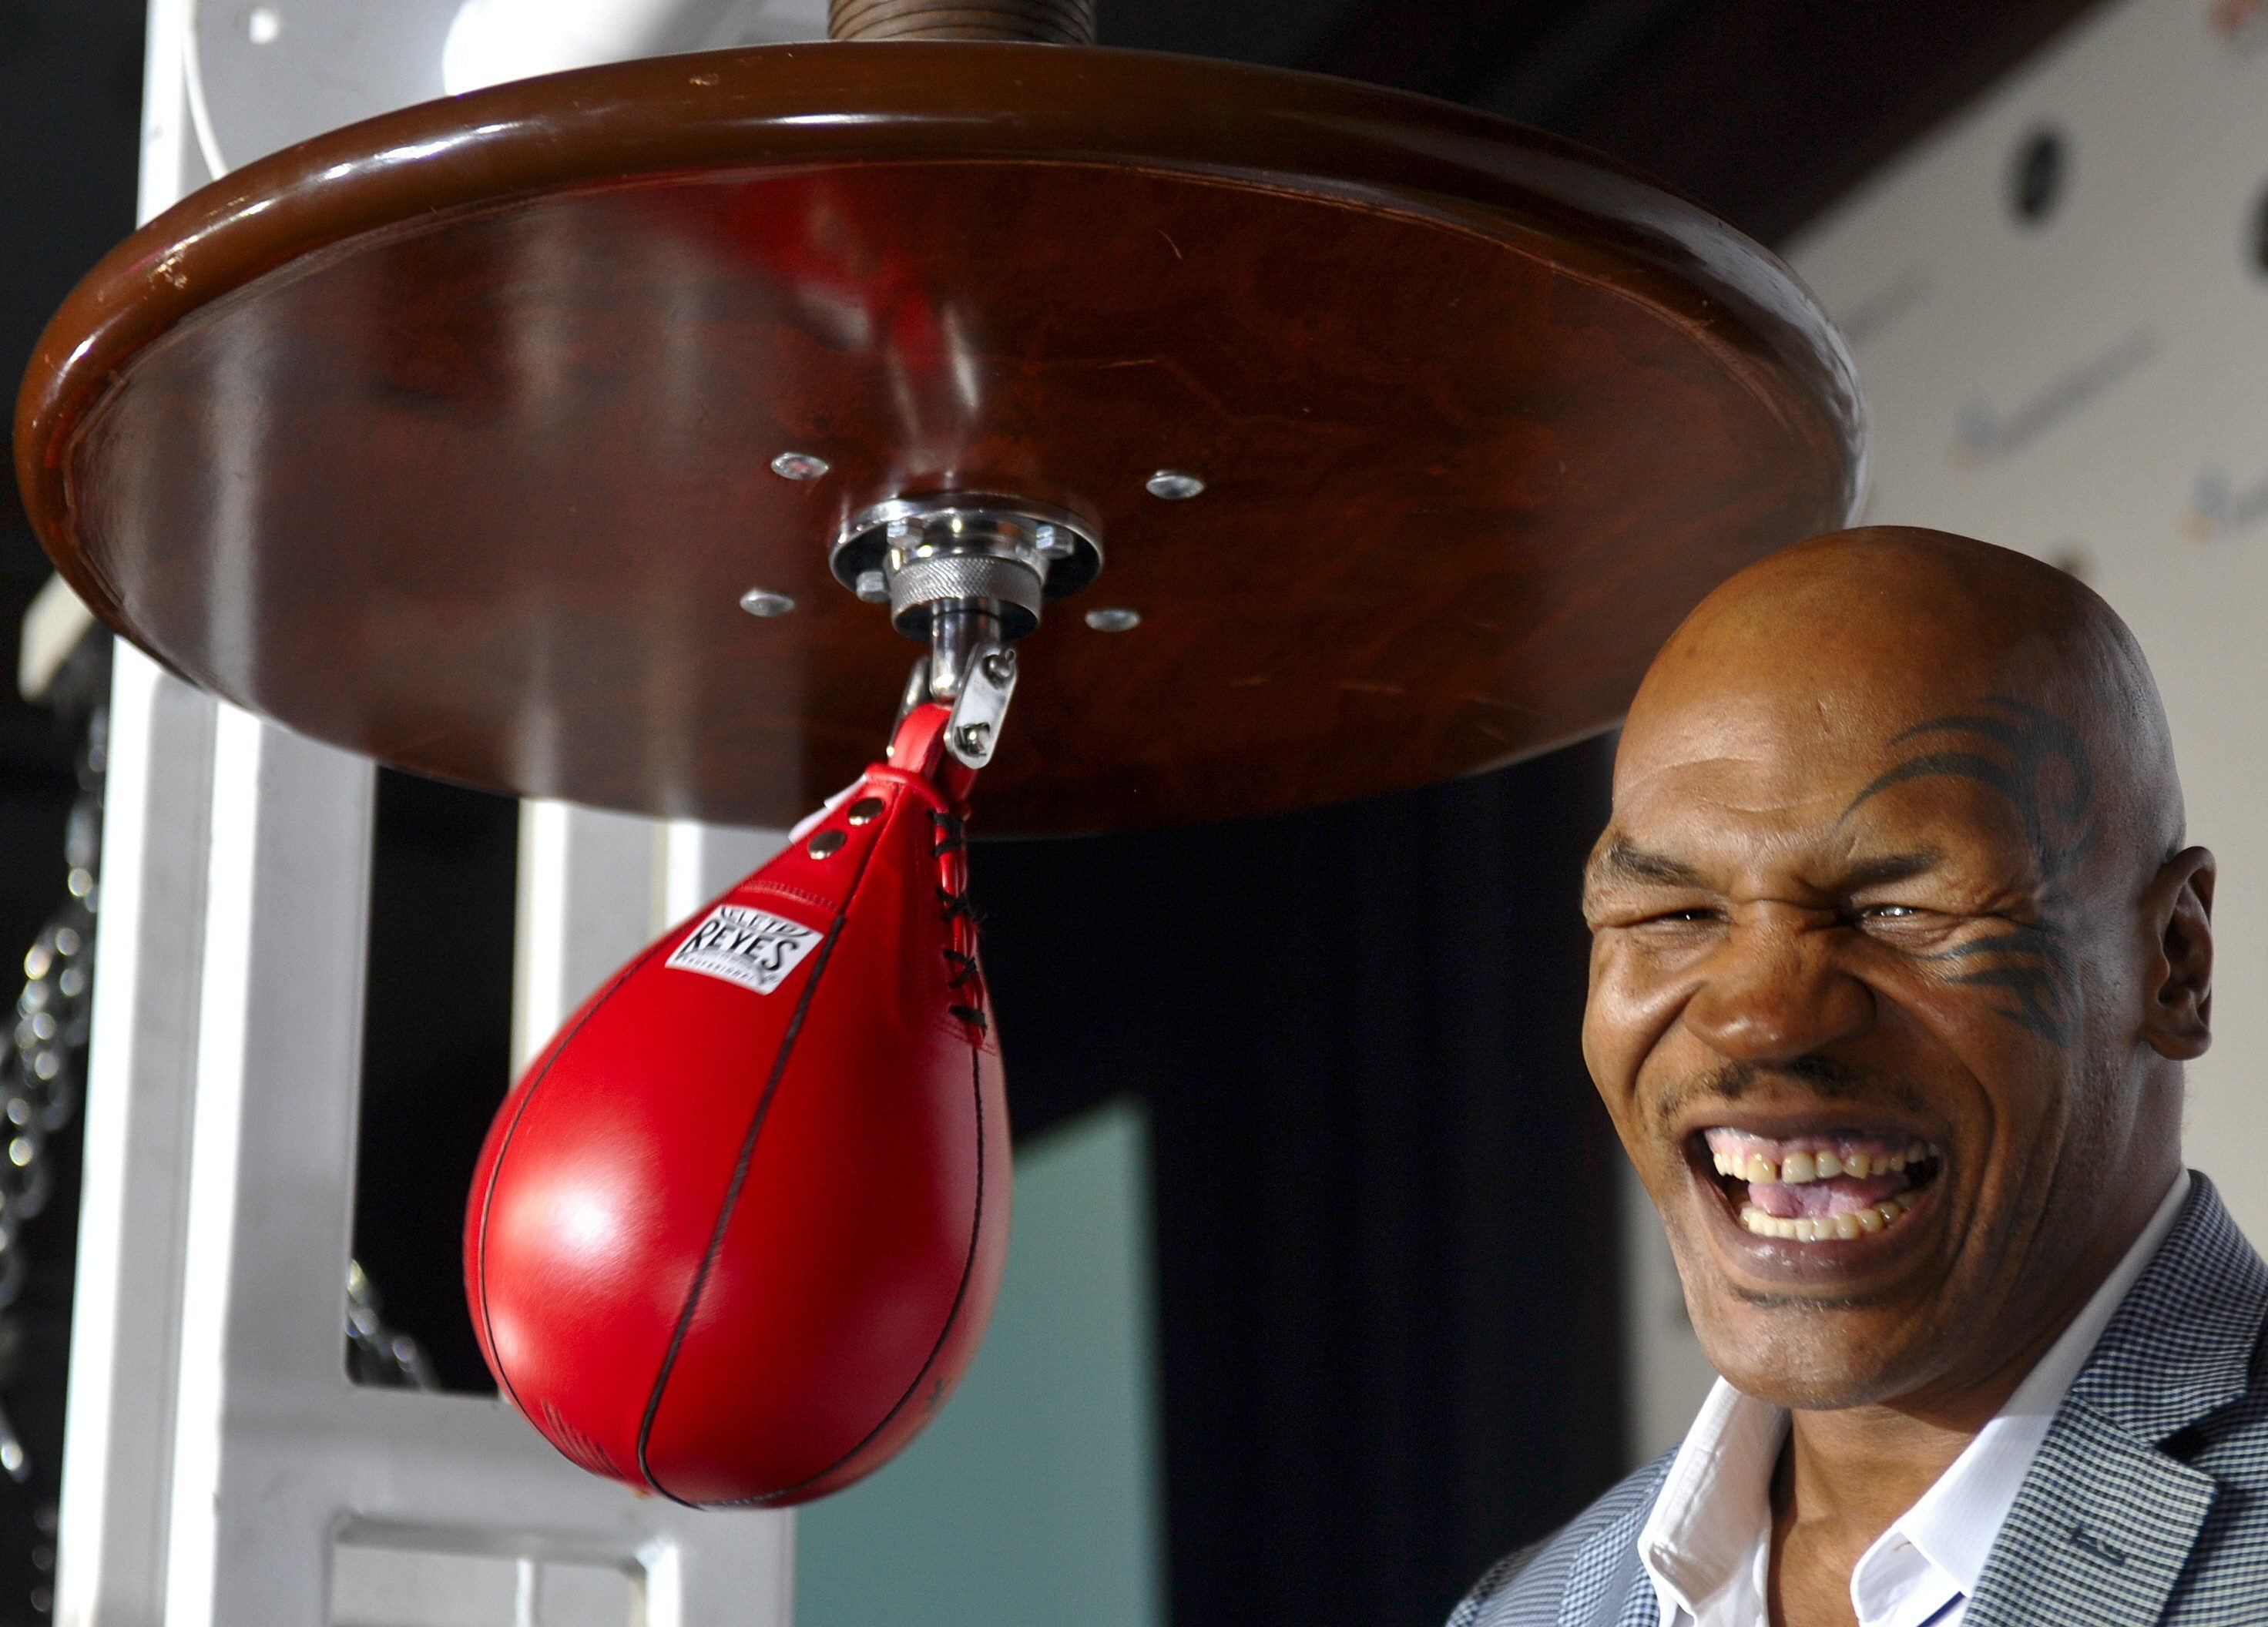 Tyson ha vuelto a pelear en un combate de exhibición en 2020 y planea repetir su aventura este año (EFE)